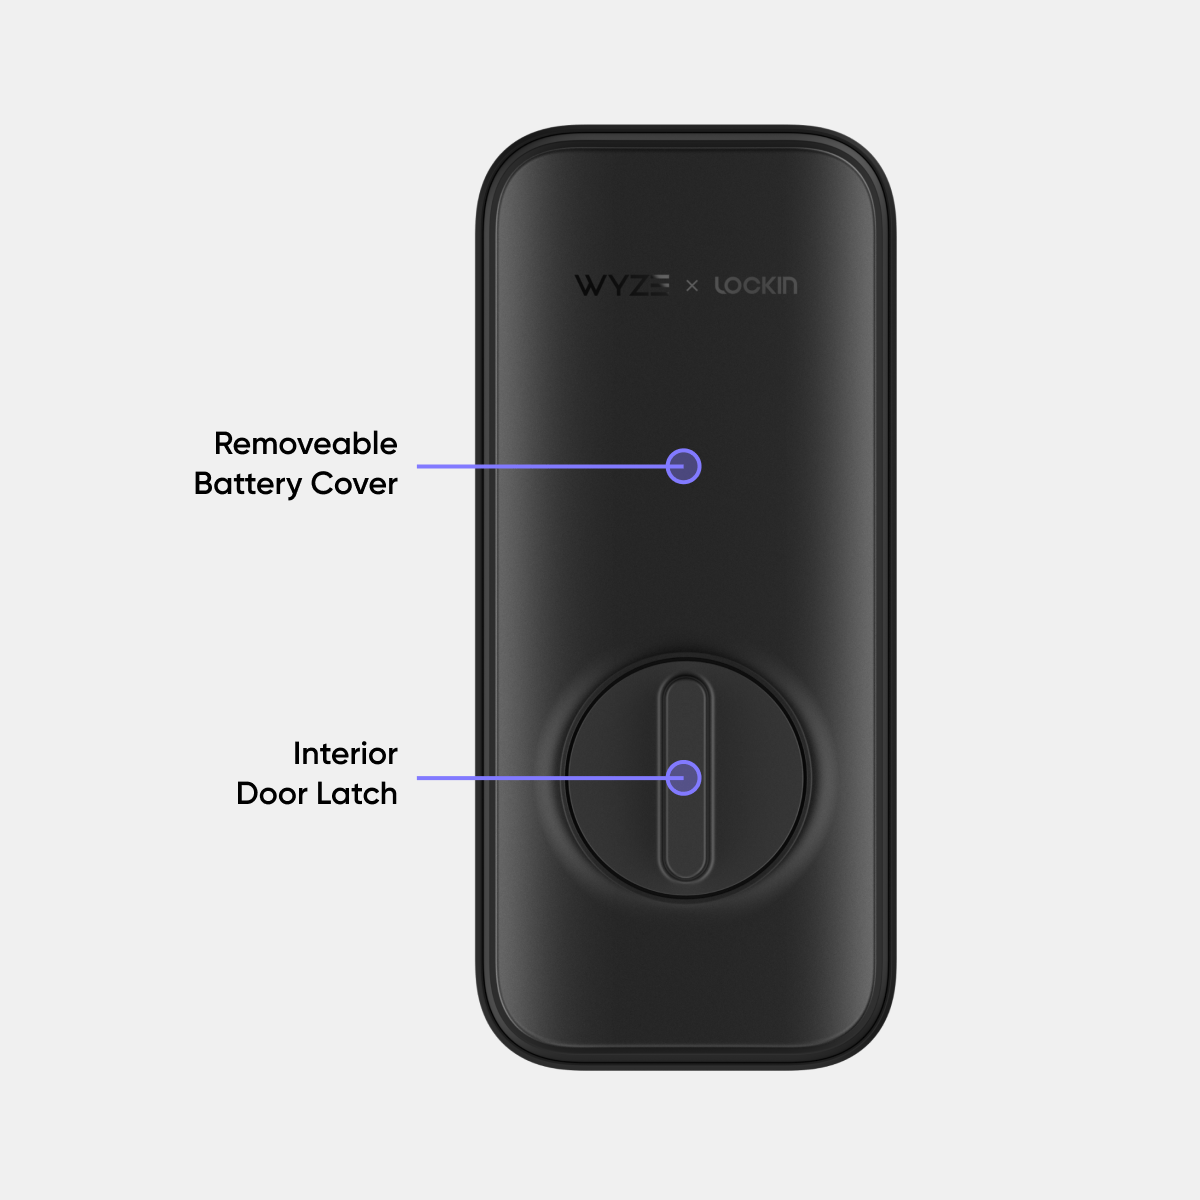 Wyze Lock Bolt  Biometric Bluetooth Smart Lock – Wyze Labs, Inc.